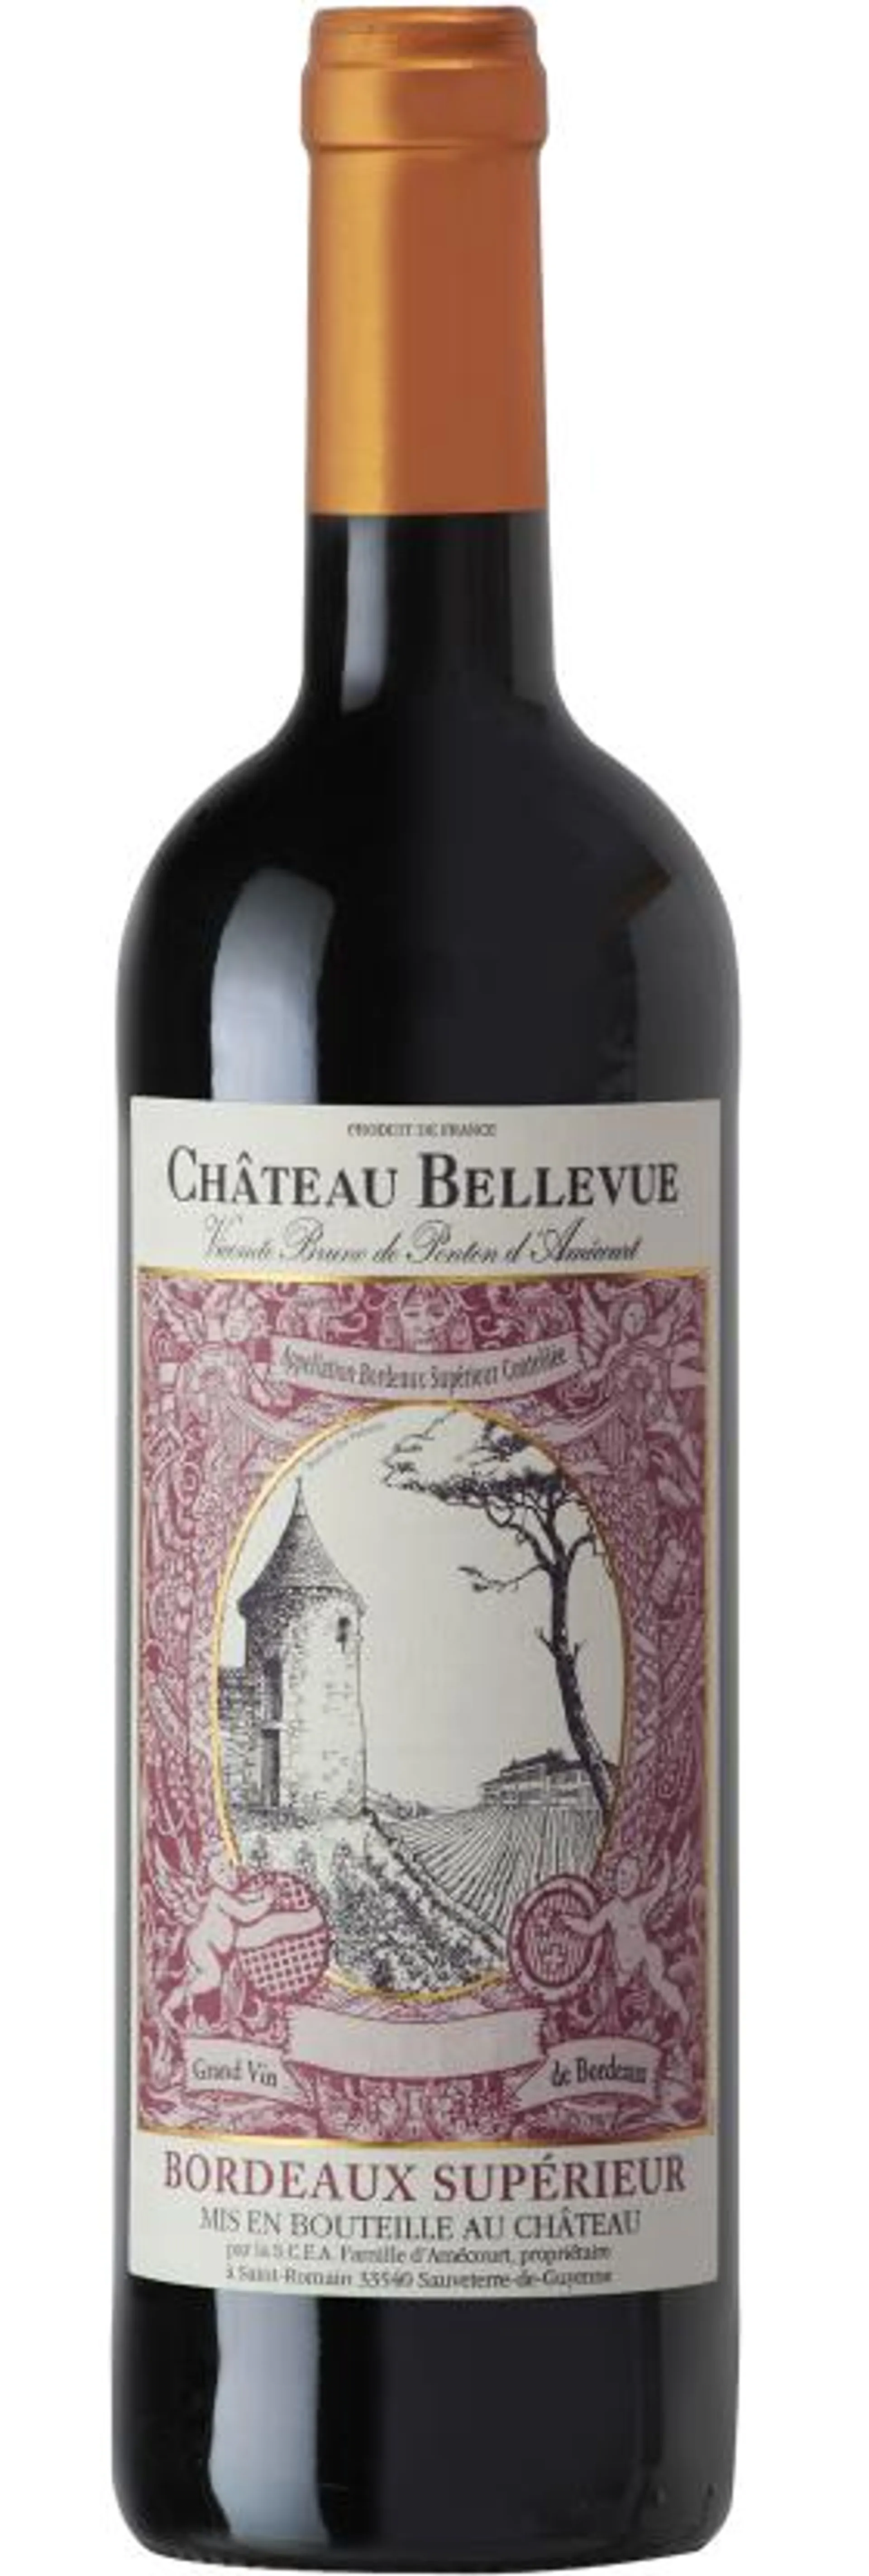 Château Bellevue- Bordeaux Supérieur 2018